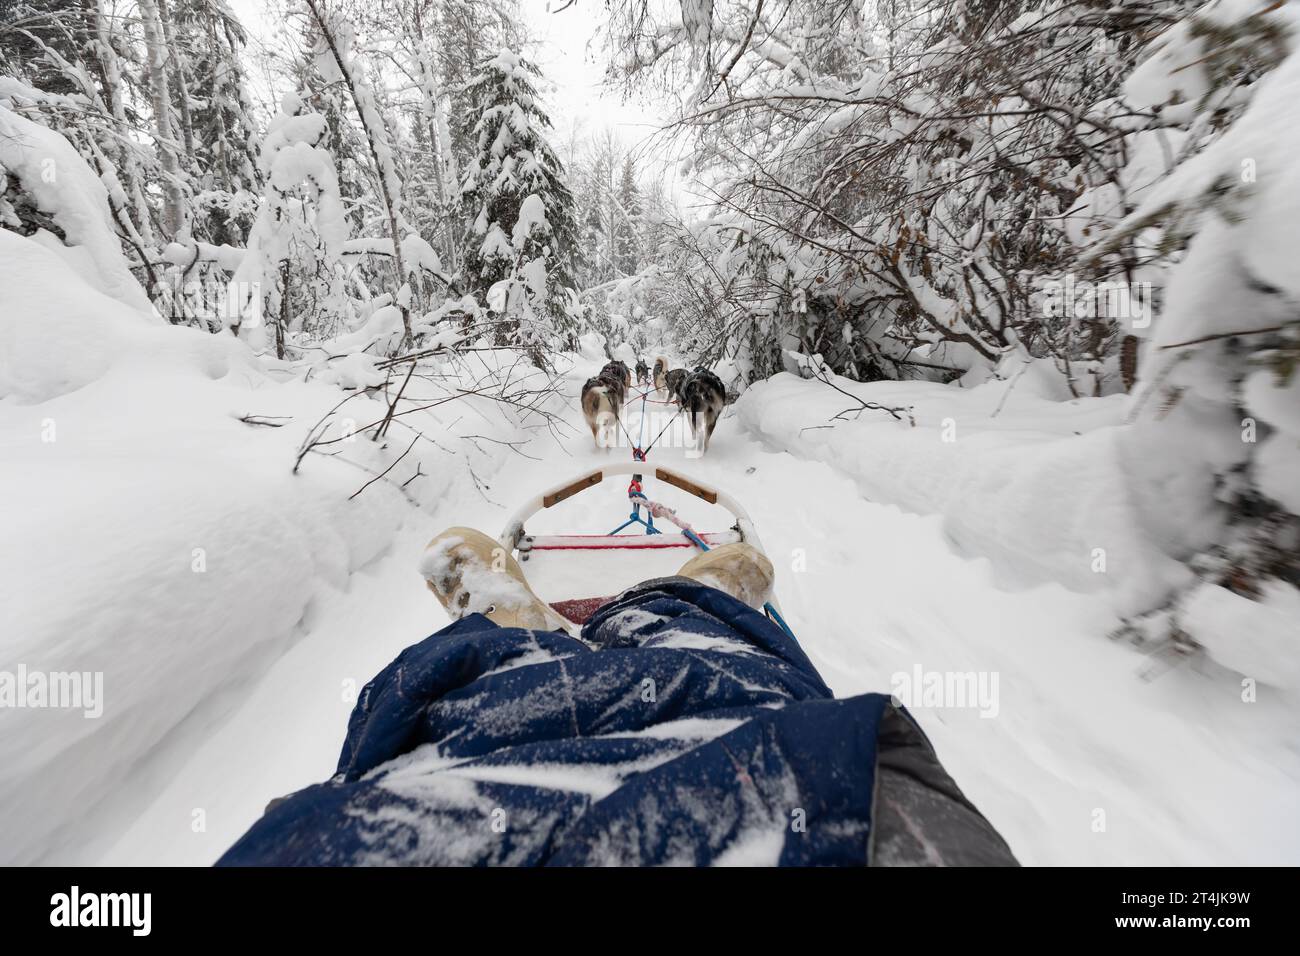 Huskies ziehen den Hundeschlitten durch eine enge Prüfung in einem winterlichen weißen Wald, der mit Schnee bedeckt ist Stockfoto